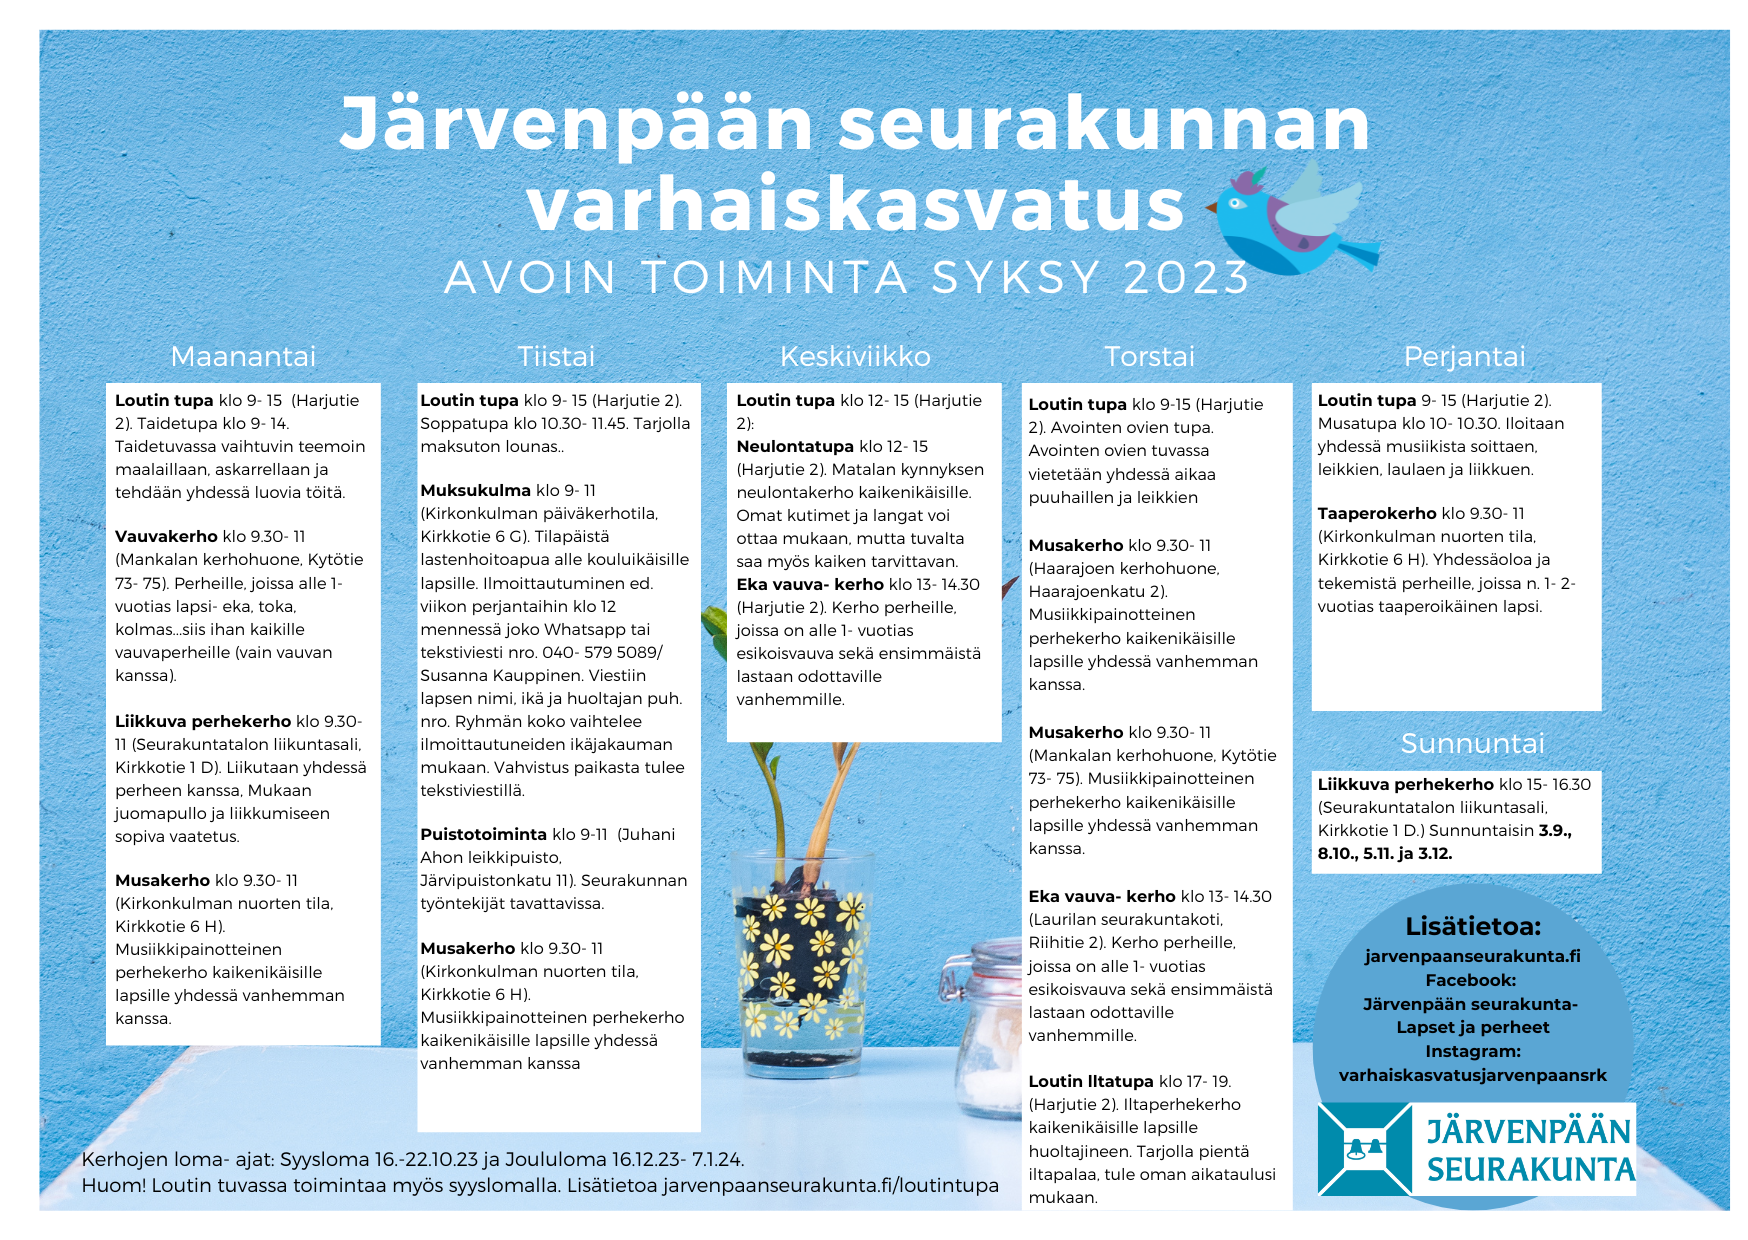 Järvenpään seurakunnan varhaiskasvatus avoin toiminta syksy 2023